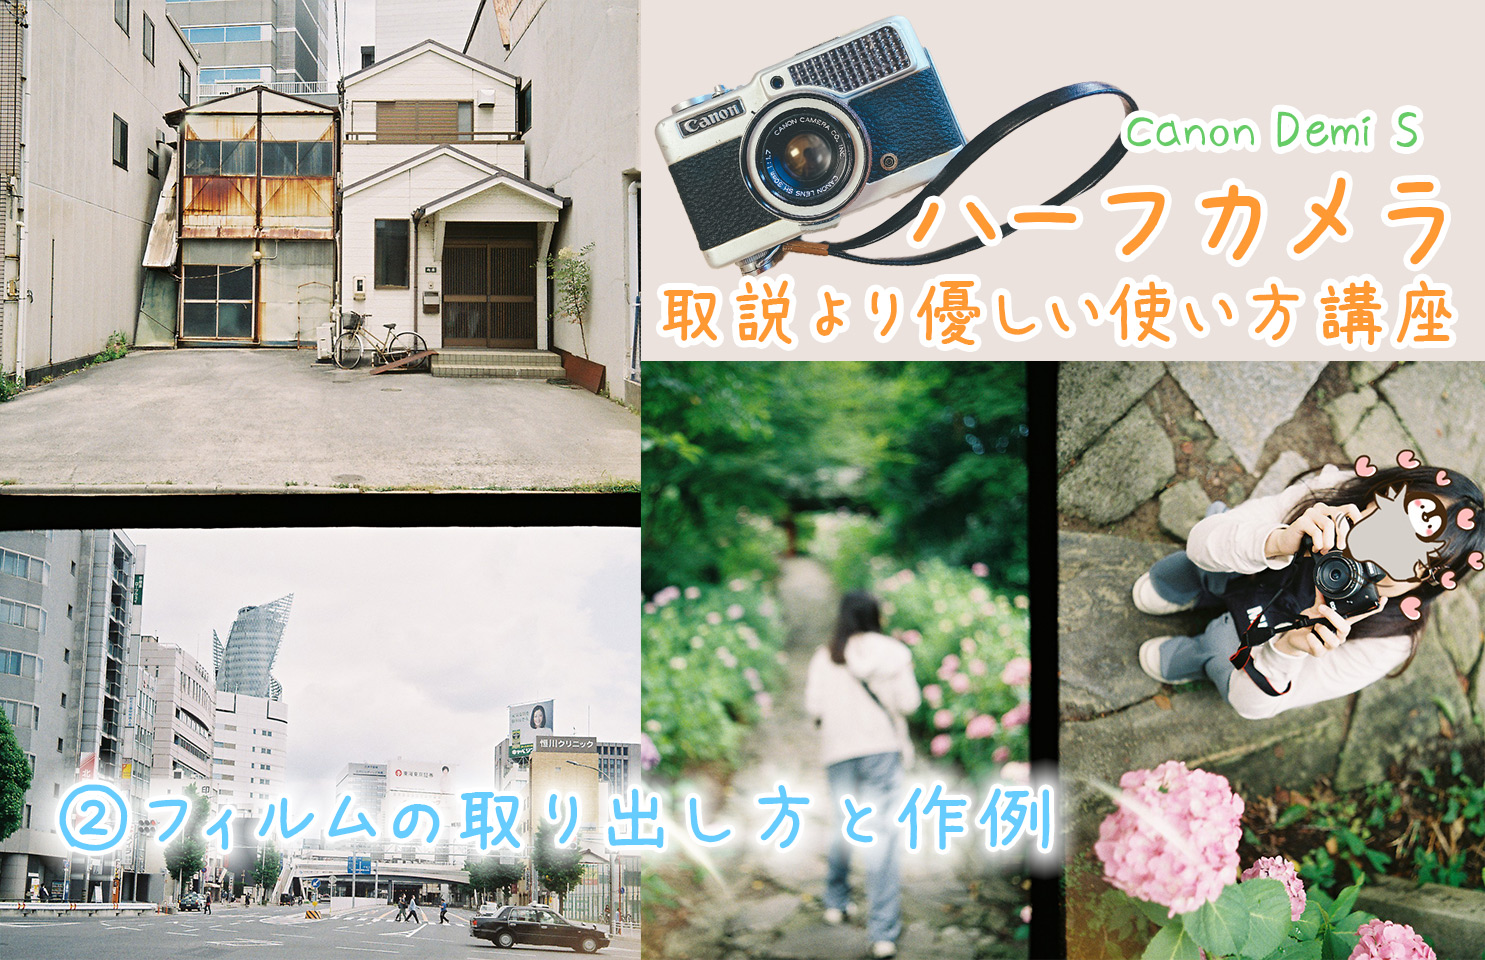 ハーフカメラの使い方と作例 Canon Demi S キヤノン デミ の使い方 ここカメ